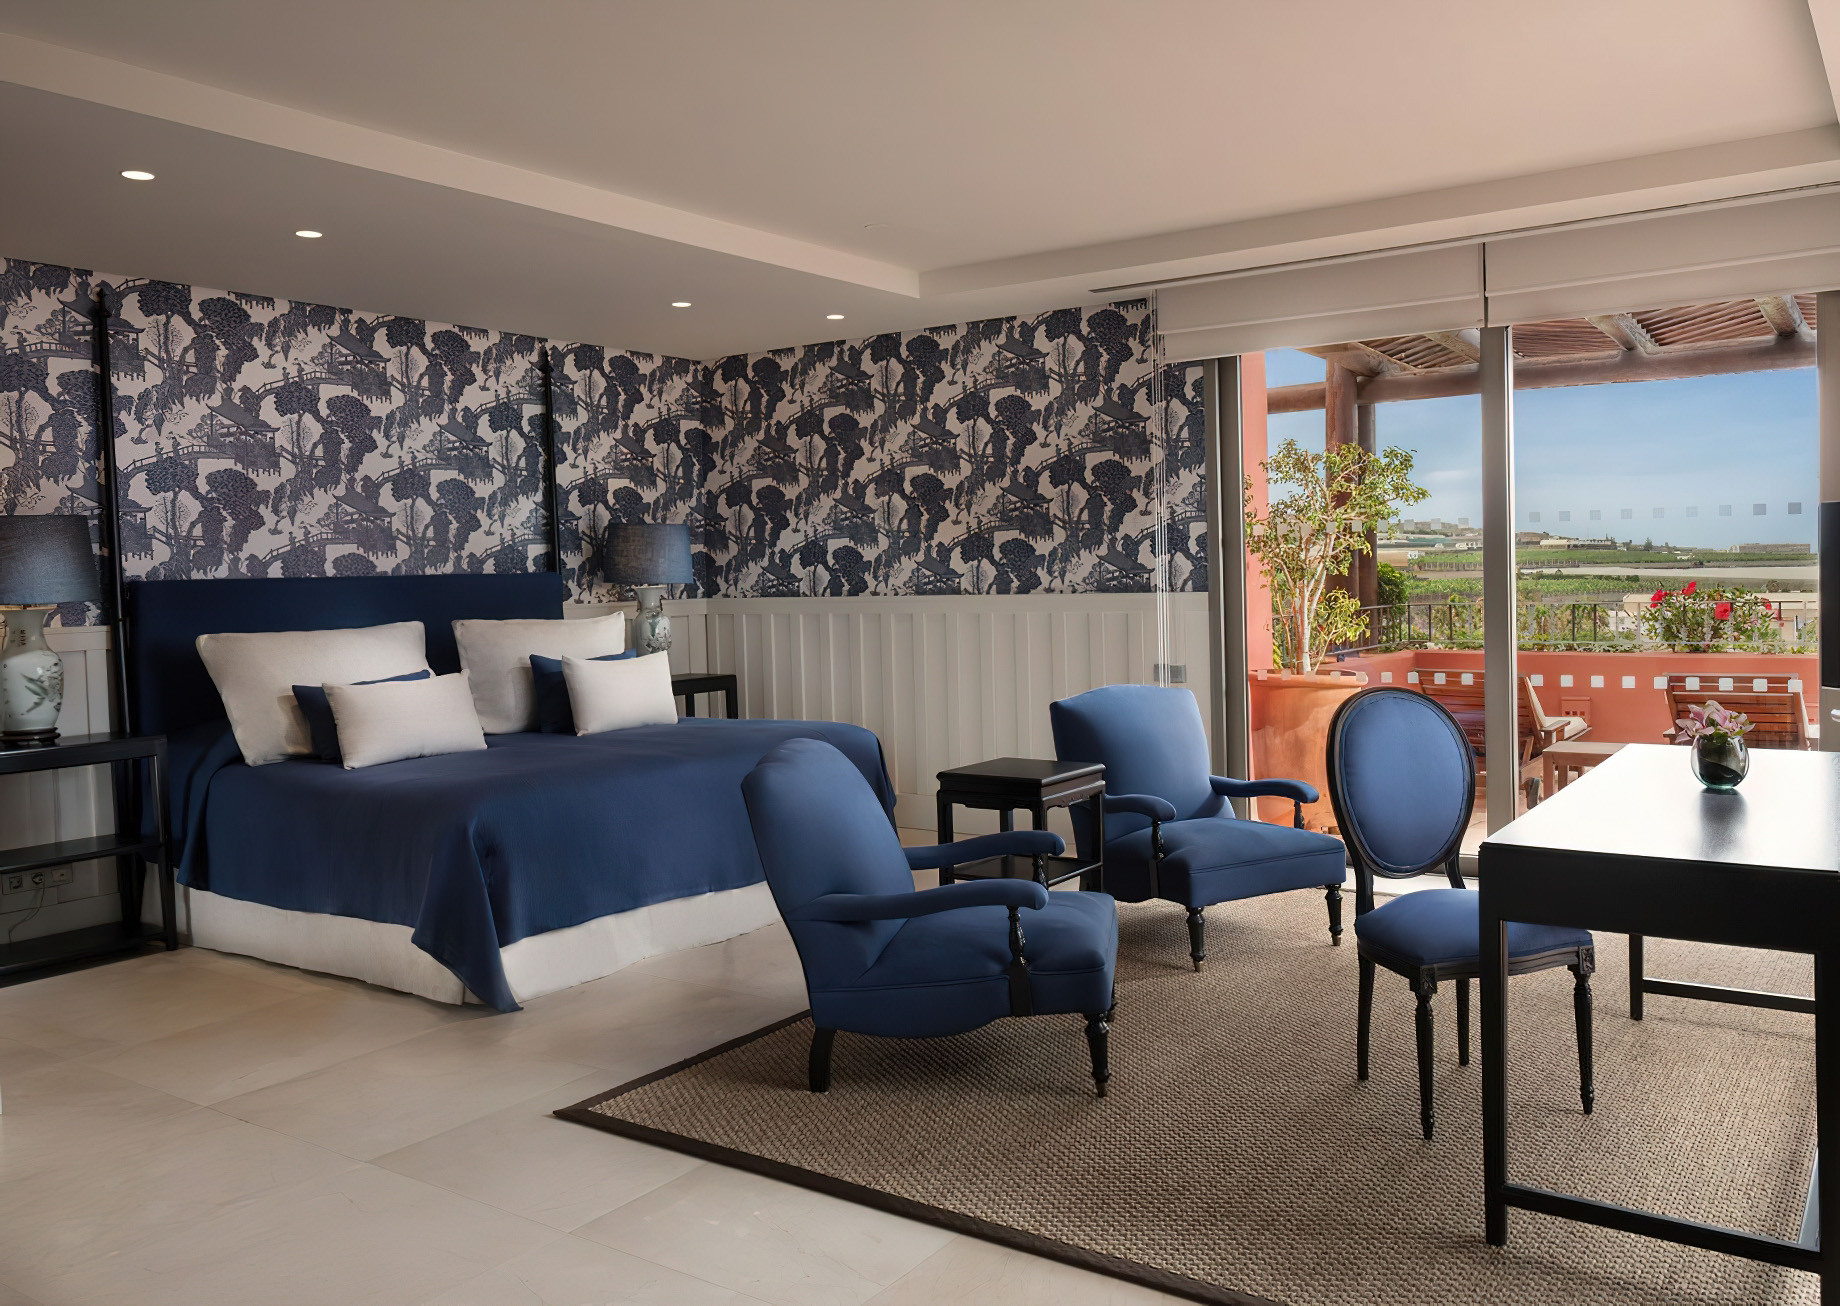 The Ritz-Carlton, Abama Resort - Santa Cruz de Tenerife, Spain - Royal Suite Bedroom Interior